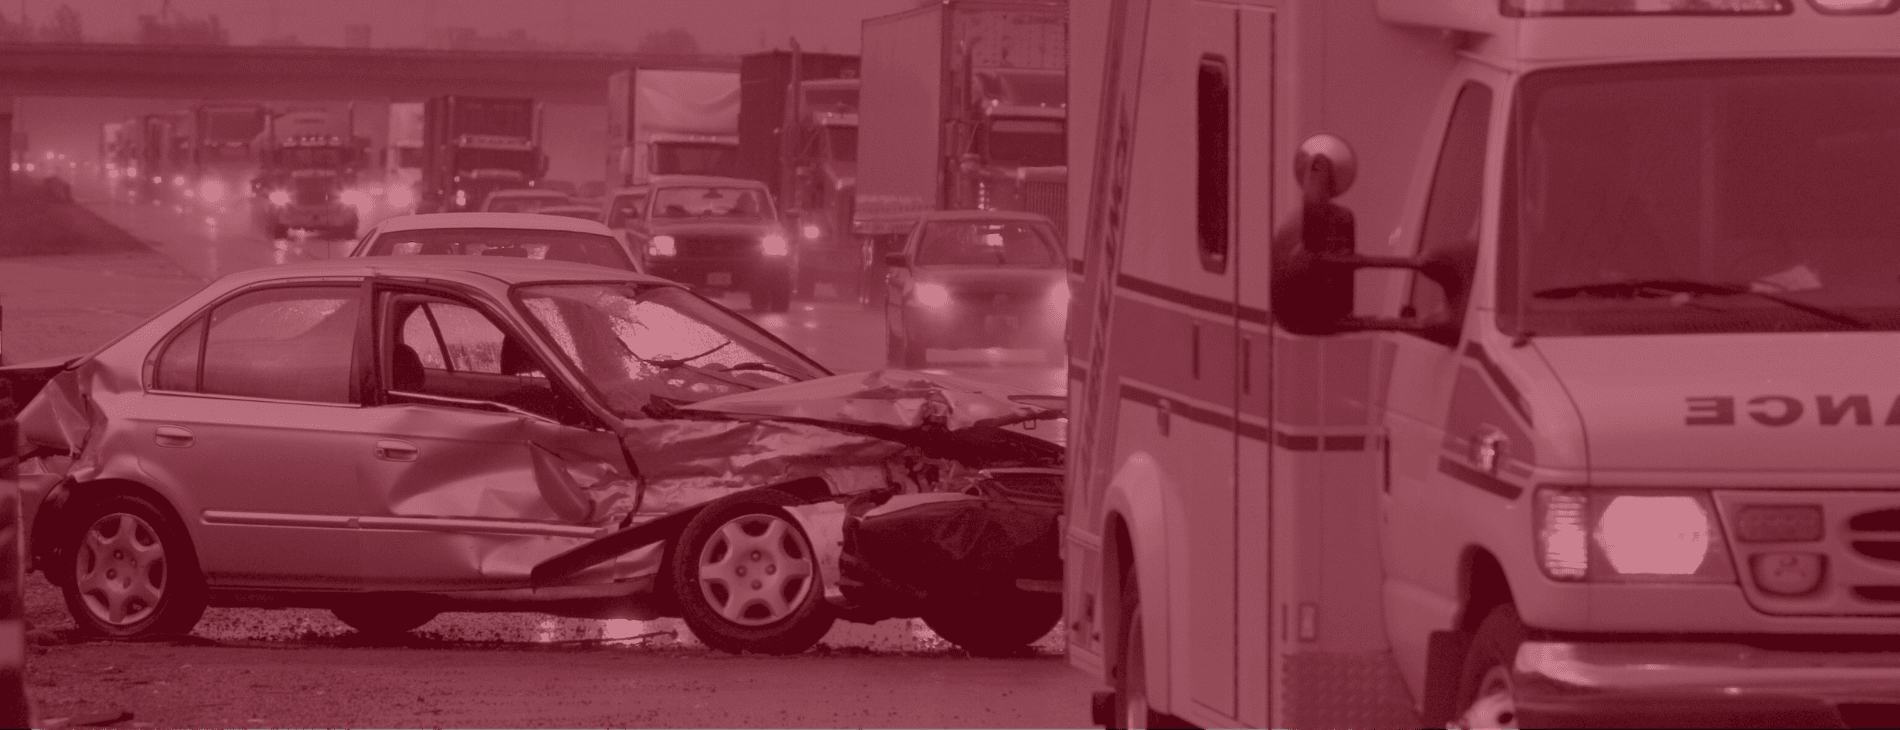 Palm Springs car crash